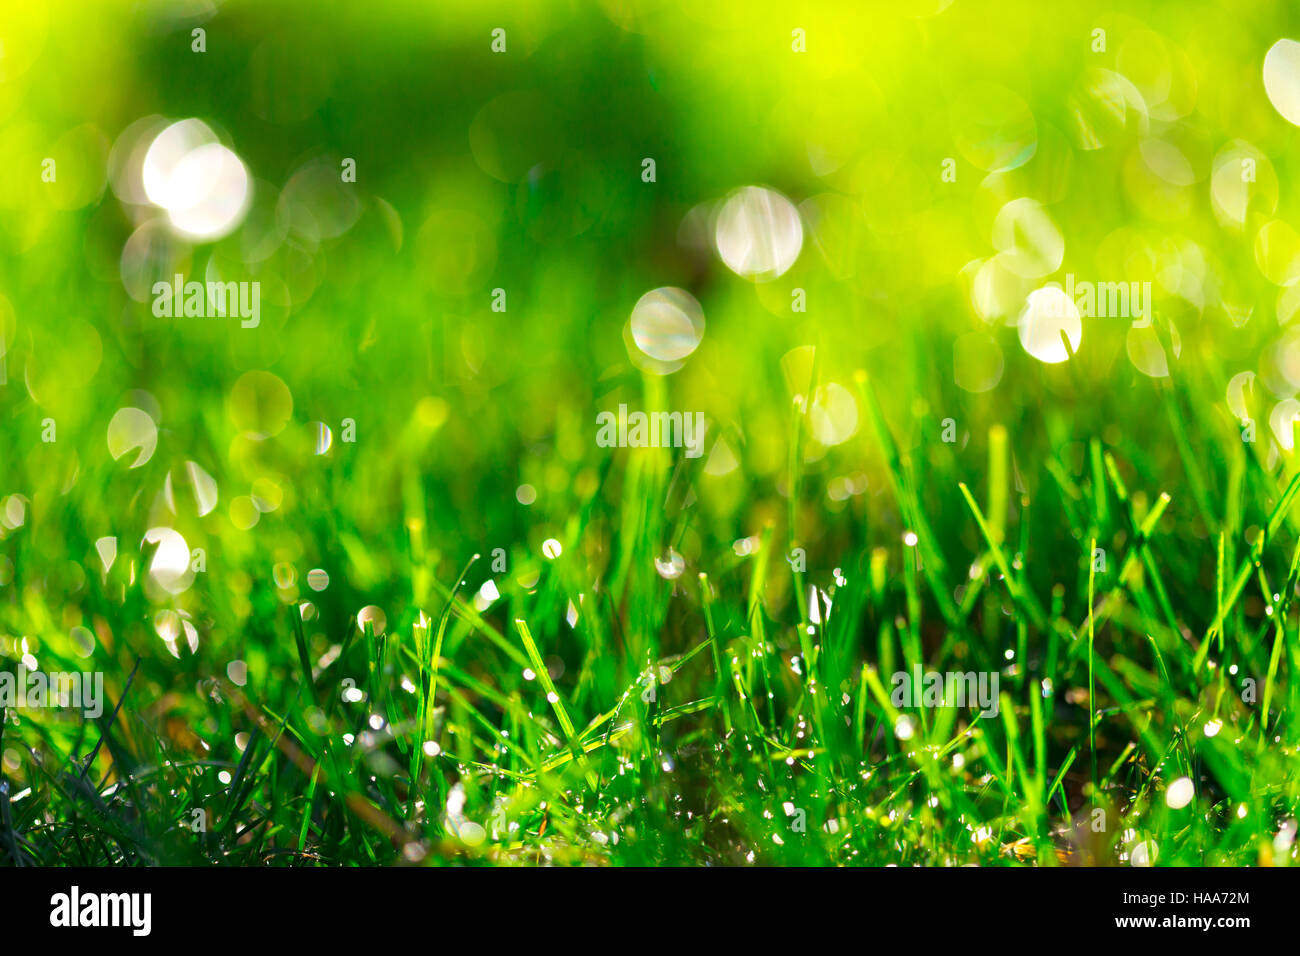 Grass-Hintergrund mit Wassertropfen, sehr geringe Schärfentiefe Stockfoto